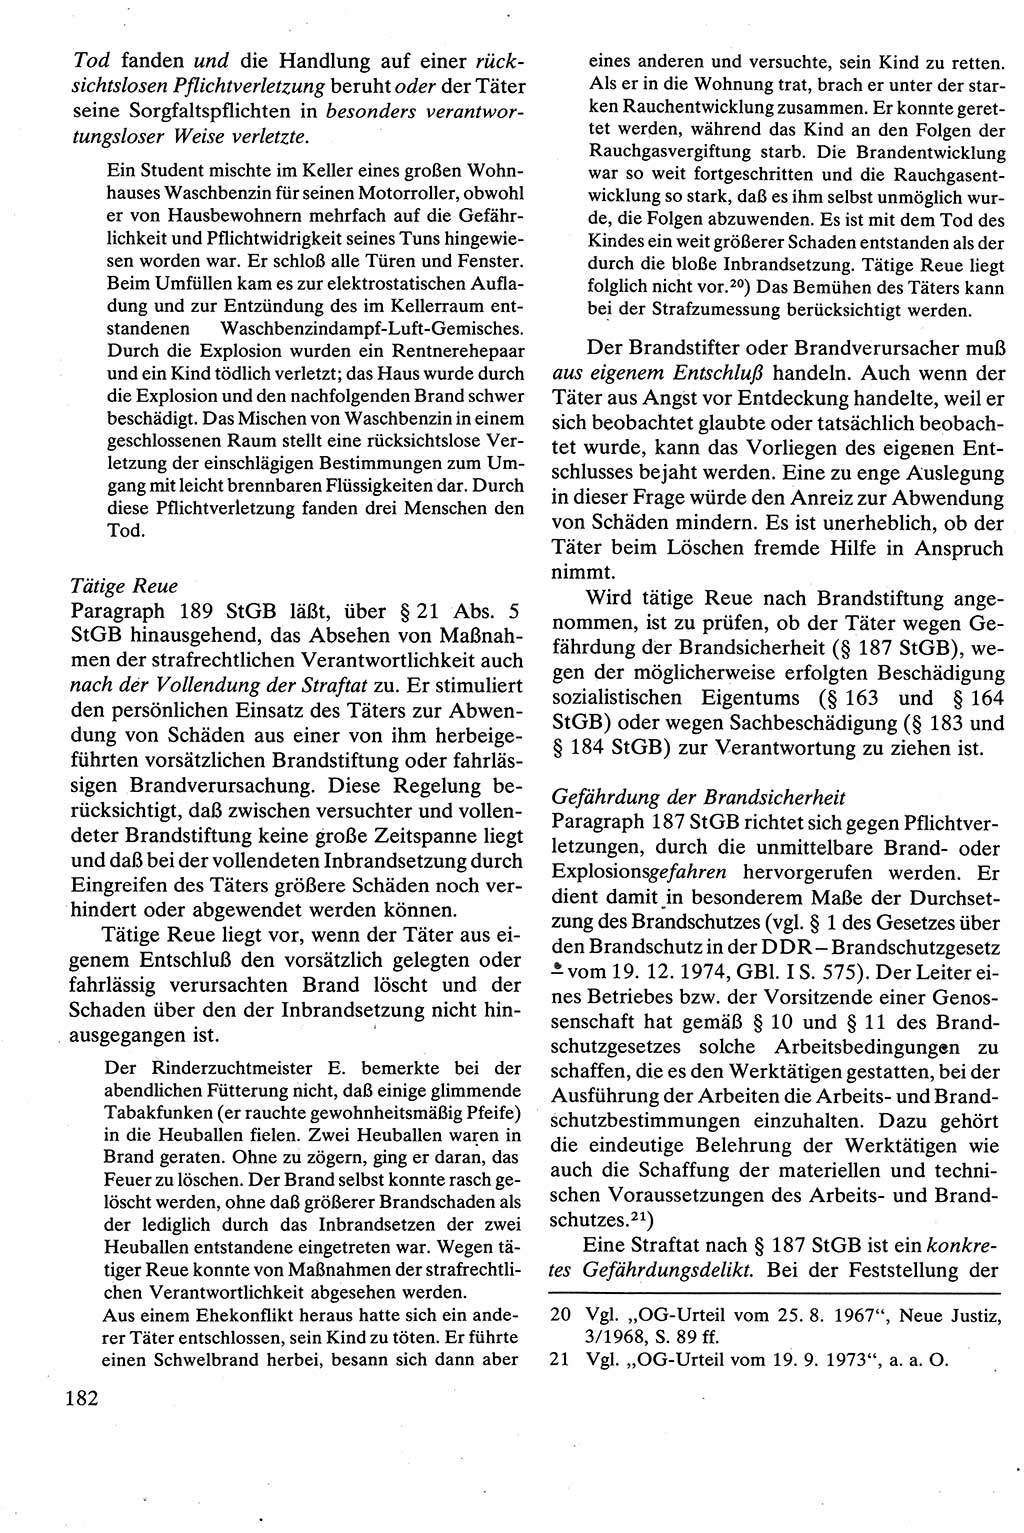 Strafrecht [Deutsche Demokratische Republik (DDR)], Besonderer Teil, Lehrbuch 1981, Seite 182 (Strafr. DDR BT Lb. 1981, S. 182)